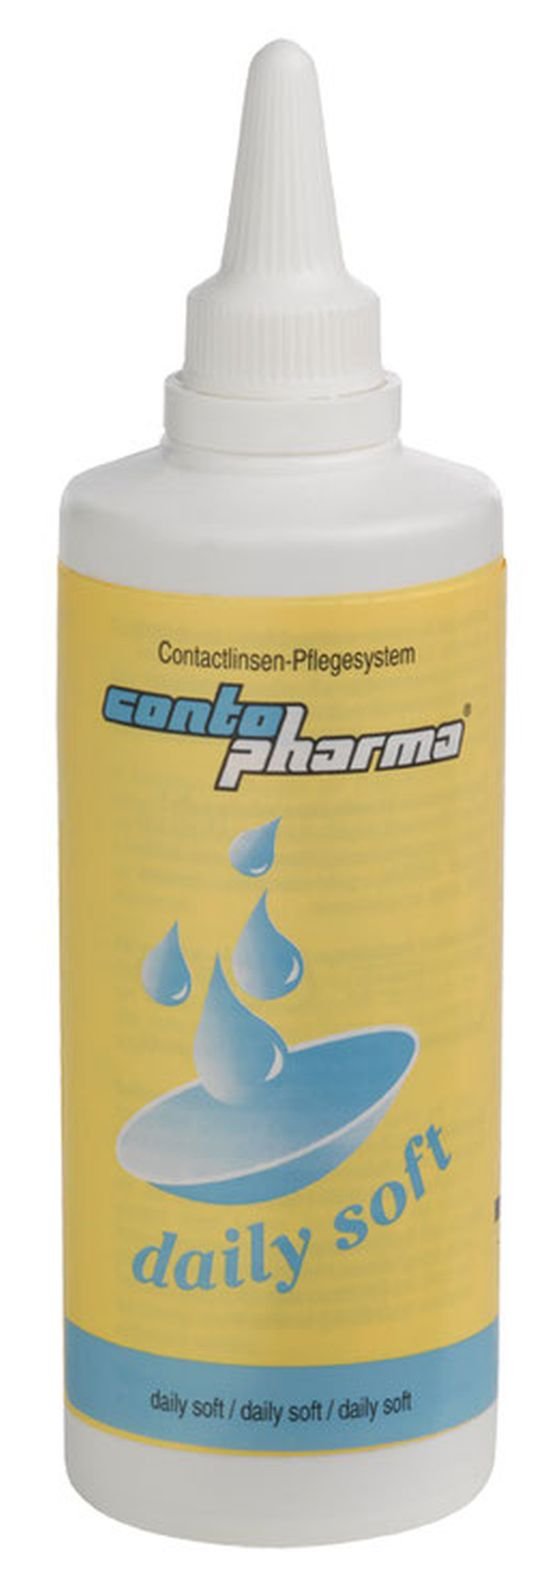 Das Bild zeigt das Pflegemittel daily soft von Contopharma.